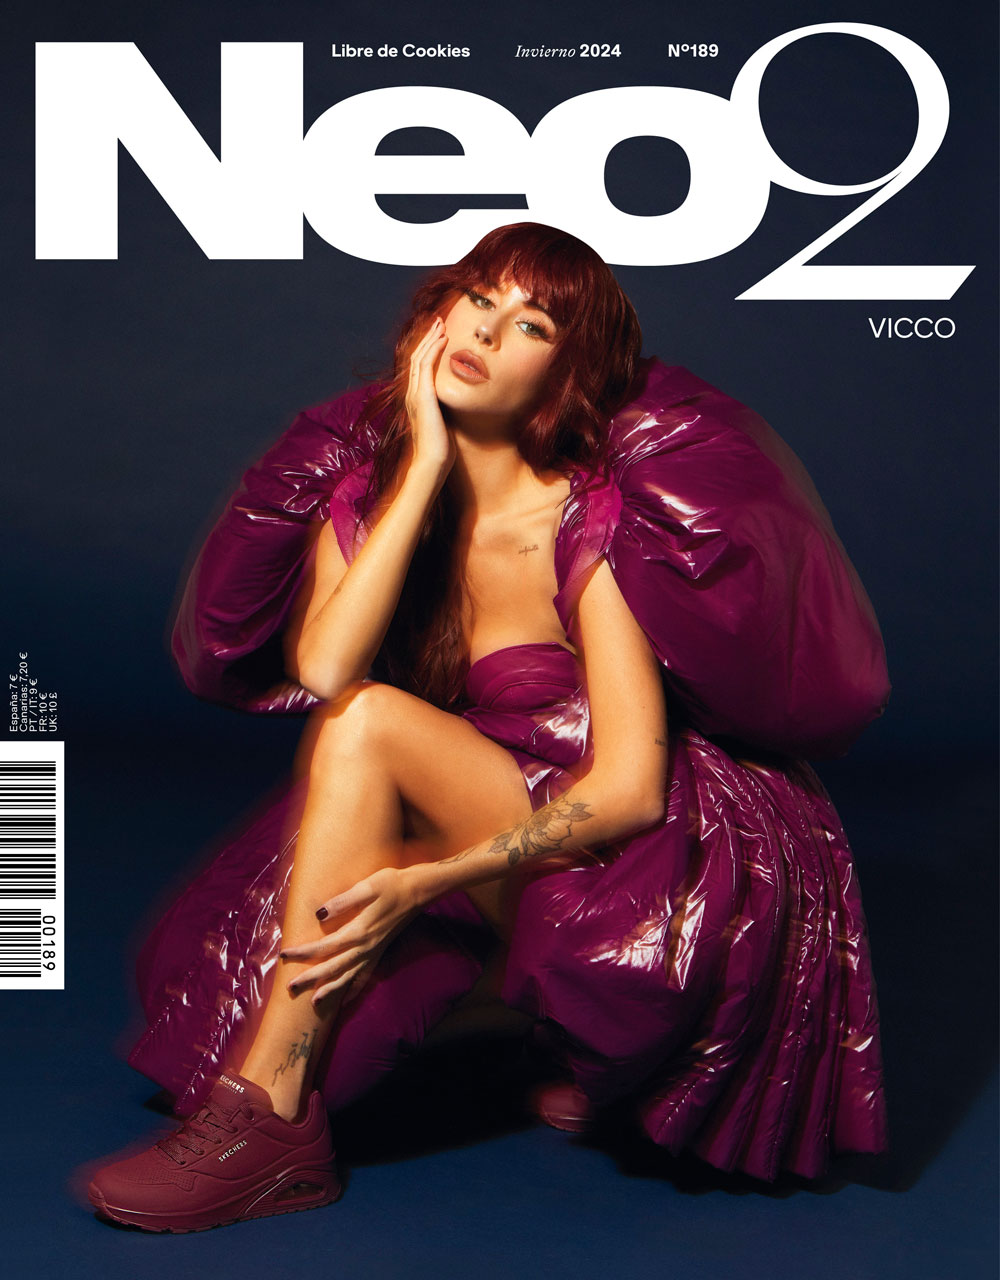 vicco portada revista neo2 2024